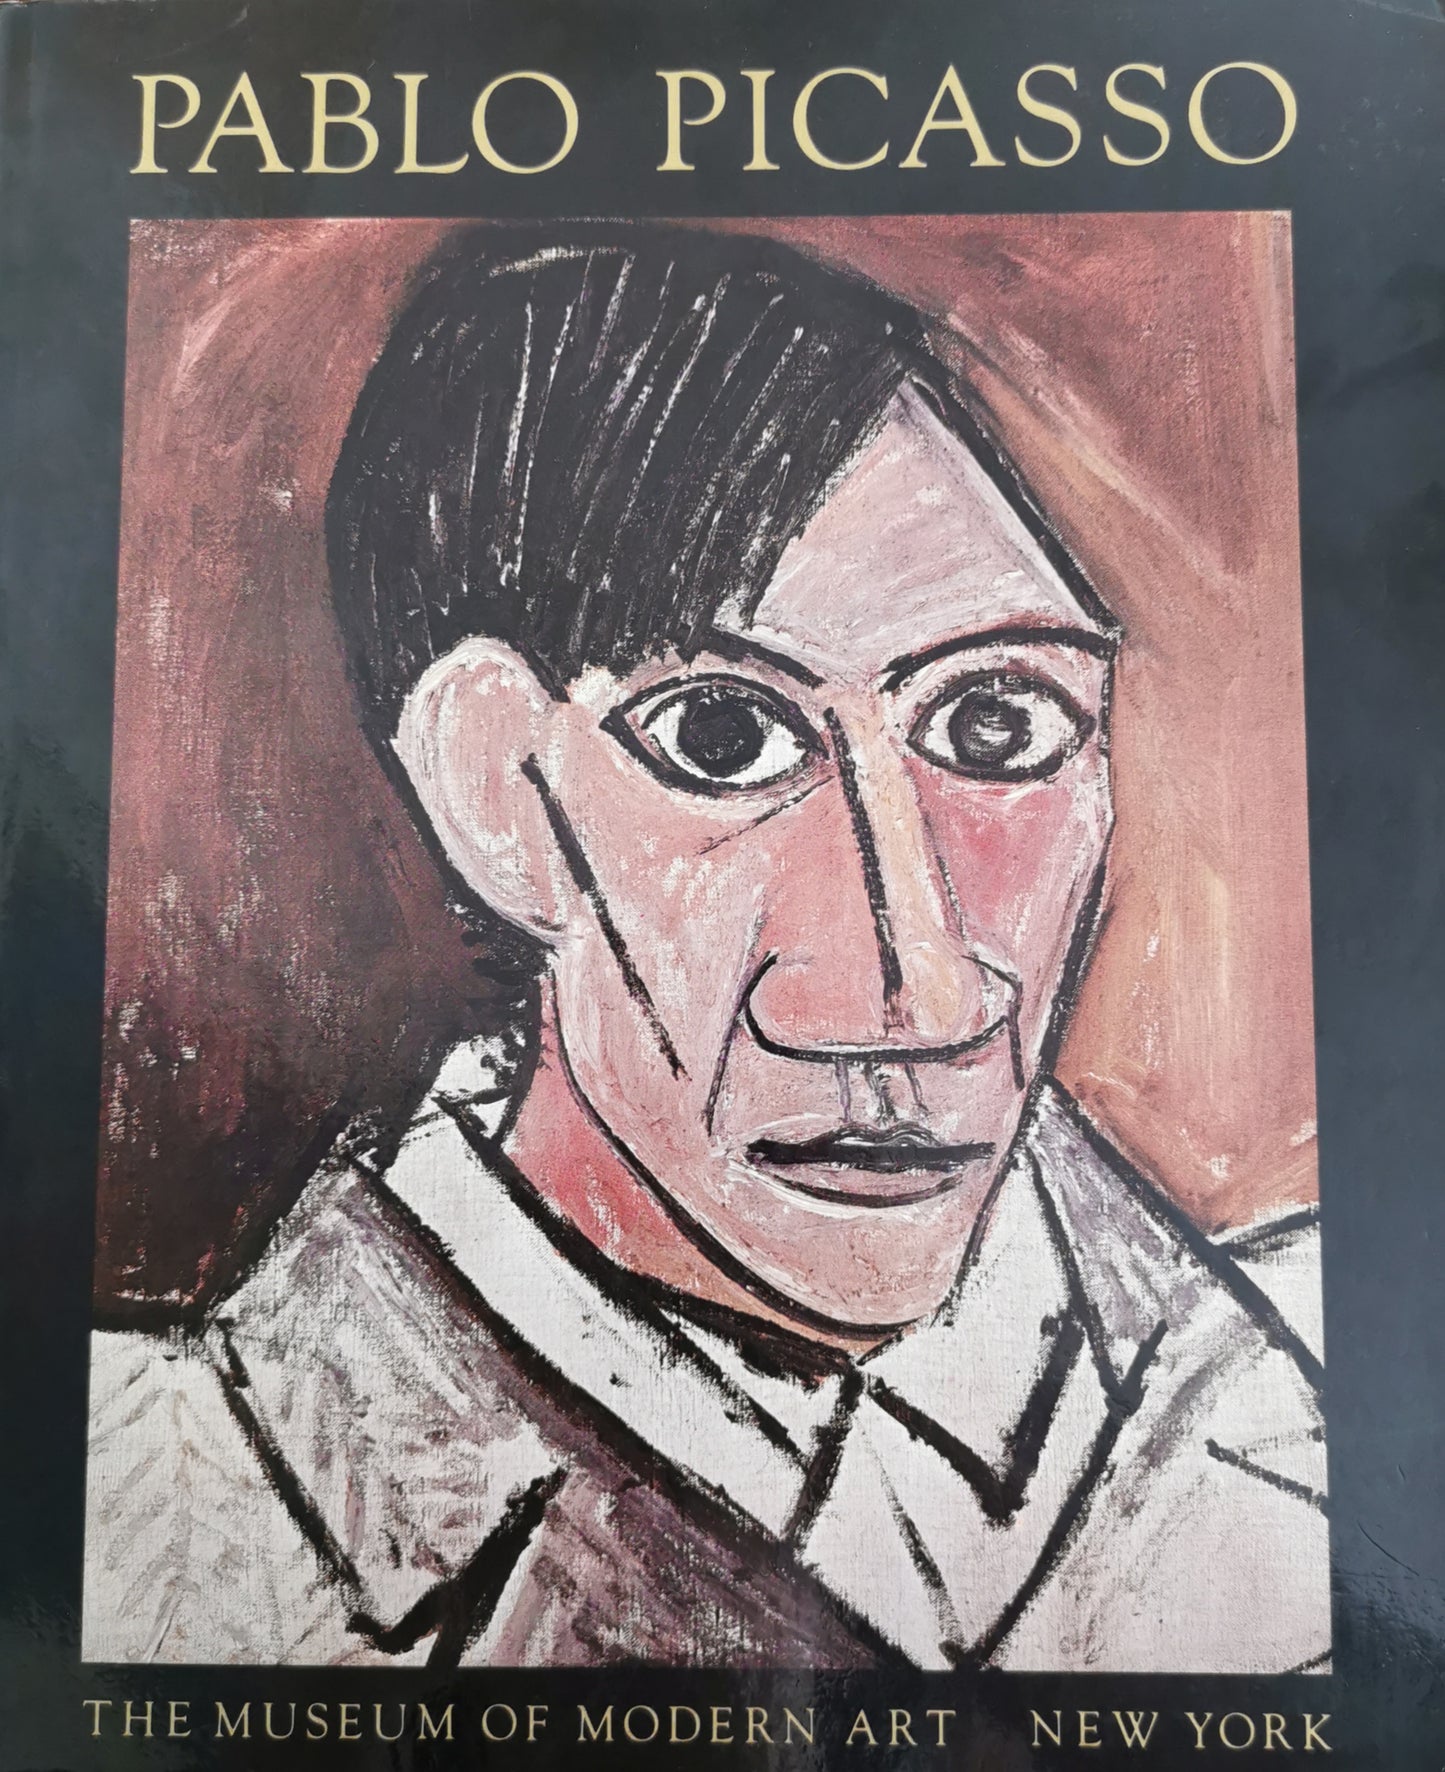 Pablo Picasso, Retrospective [exposition The Museum of Modern Art, New York 22 mai-16 septembre 1980], dir. Wlliam Rubin, The Museum of Modern Art, 1980.